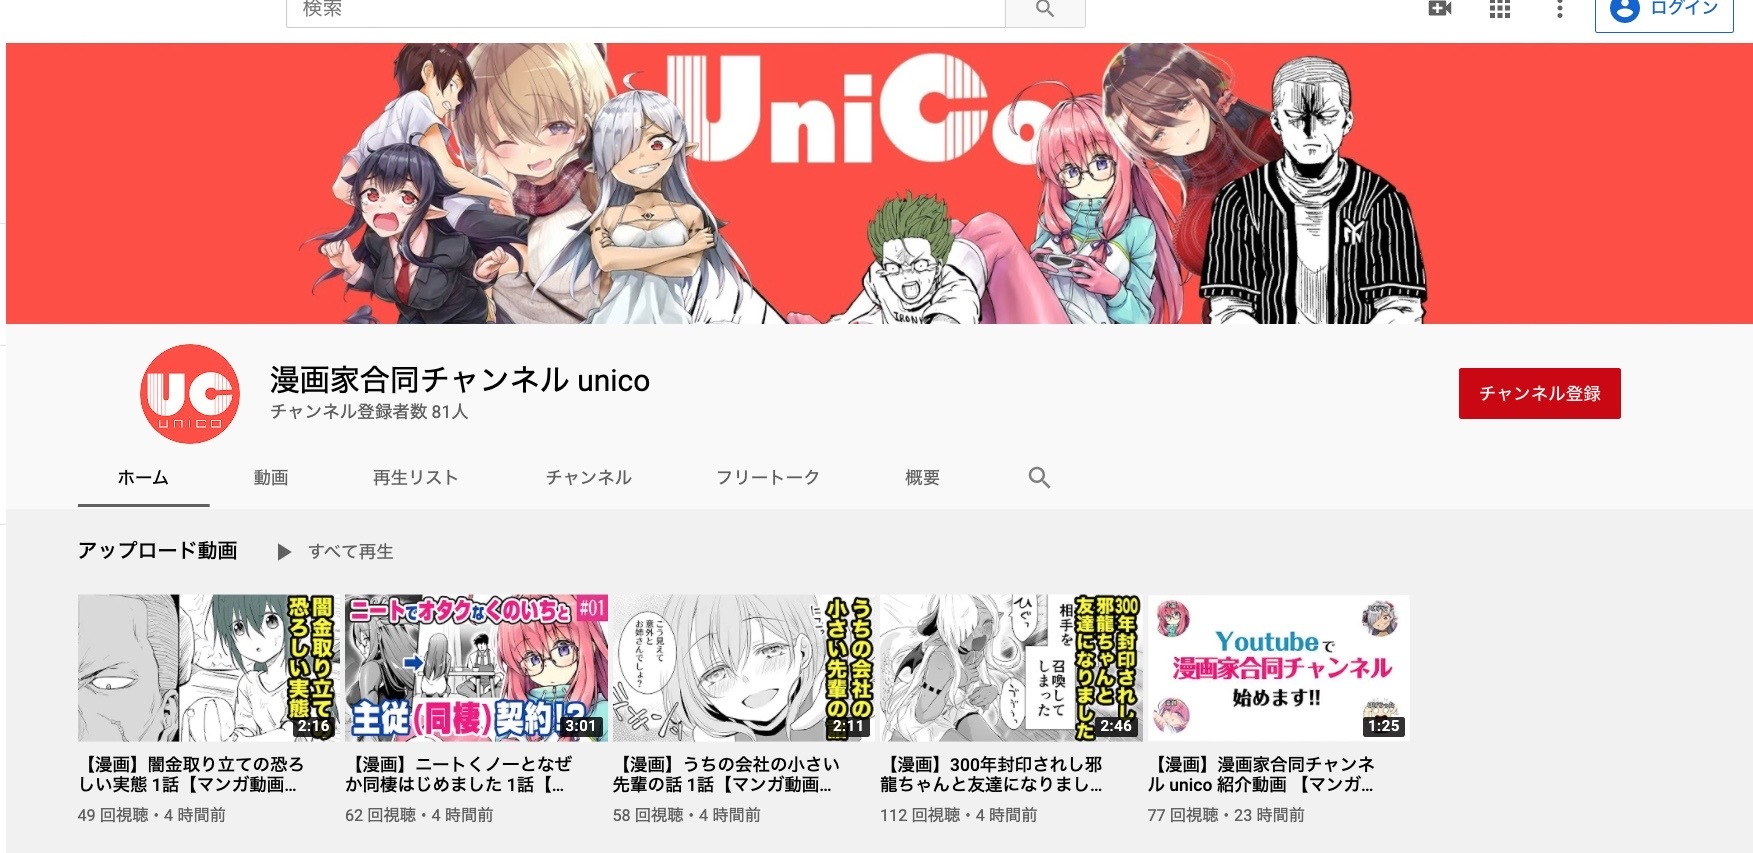 ナンバーナイン イラストレーター兼漫画家の小龍氏らによるyoutubeチャンネル 漫画家合同チャンネル Unico の運営協力を開始 株式会社ナンバーナインのプレスリリース